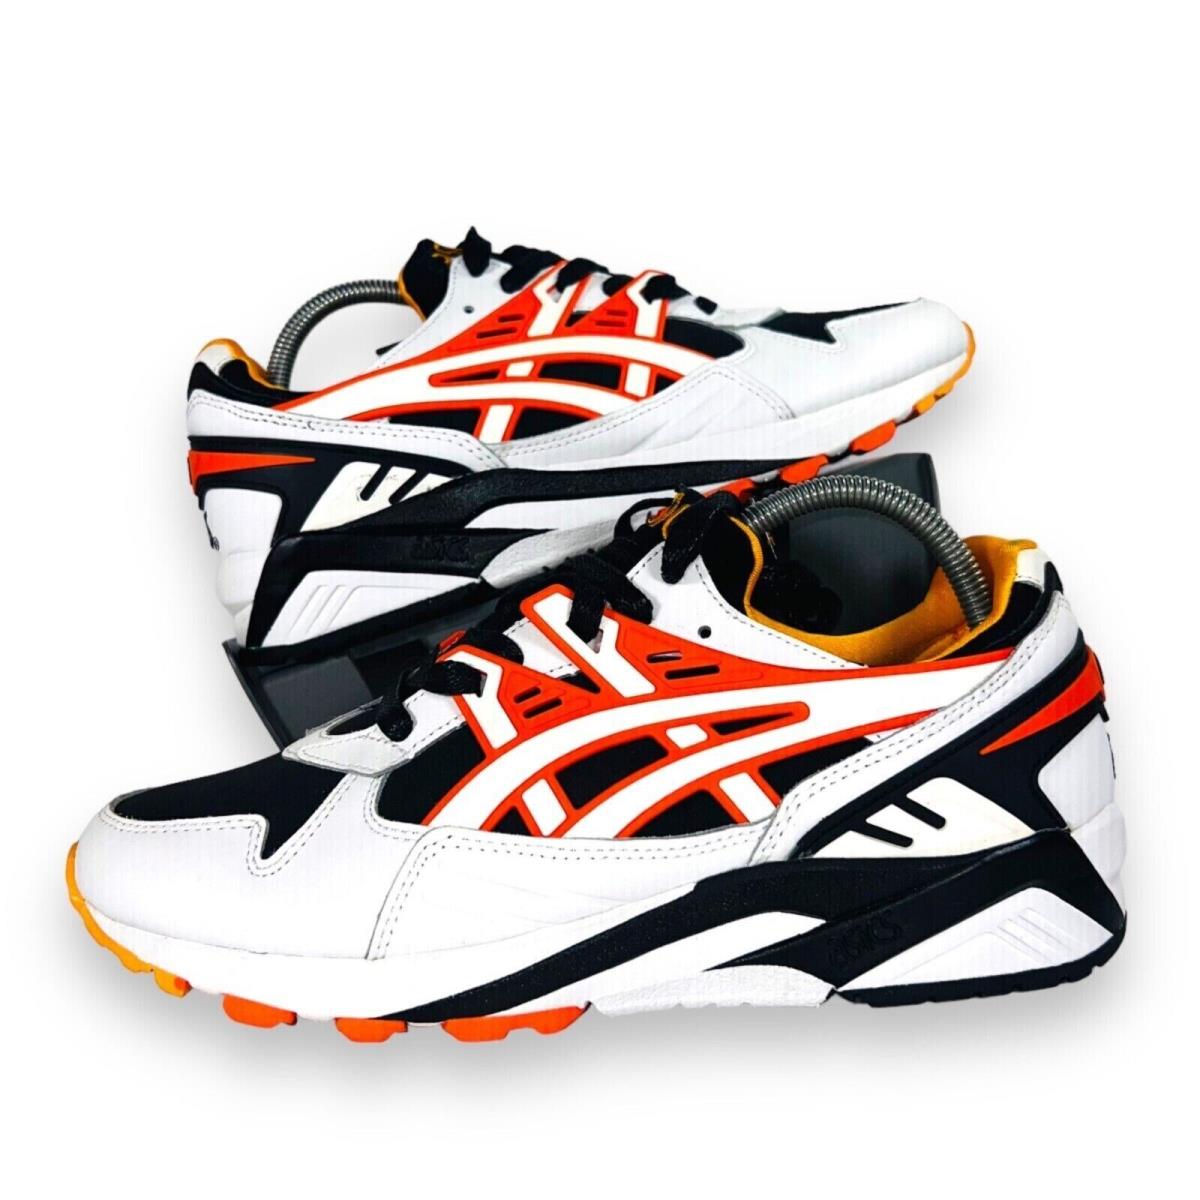 Asics Mens Gel-kayano Fashion Running Shoes White Black Orange 12 M